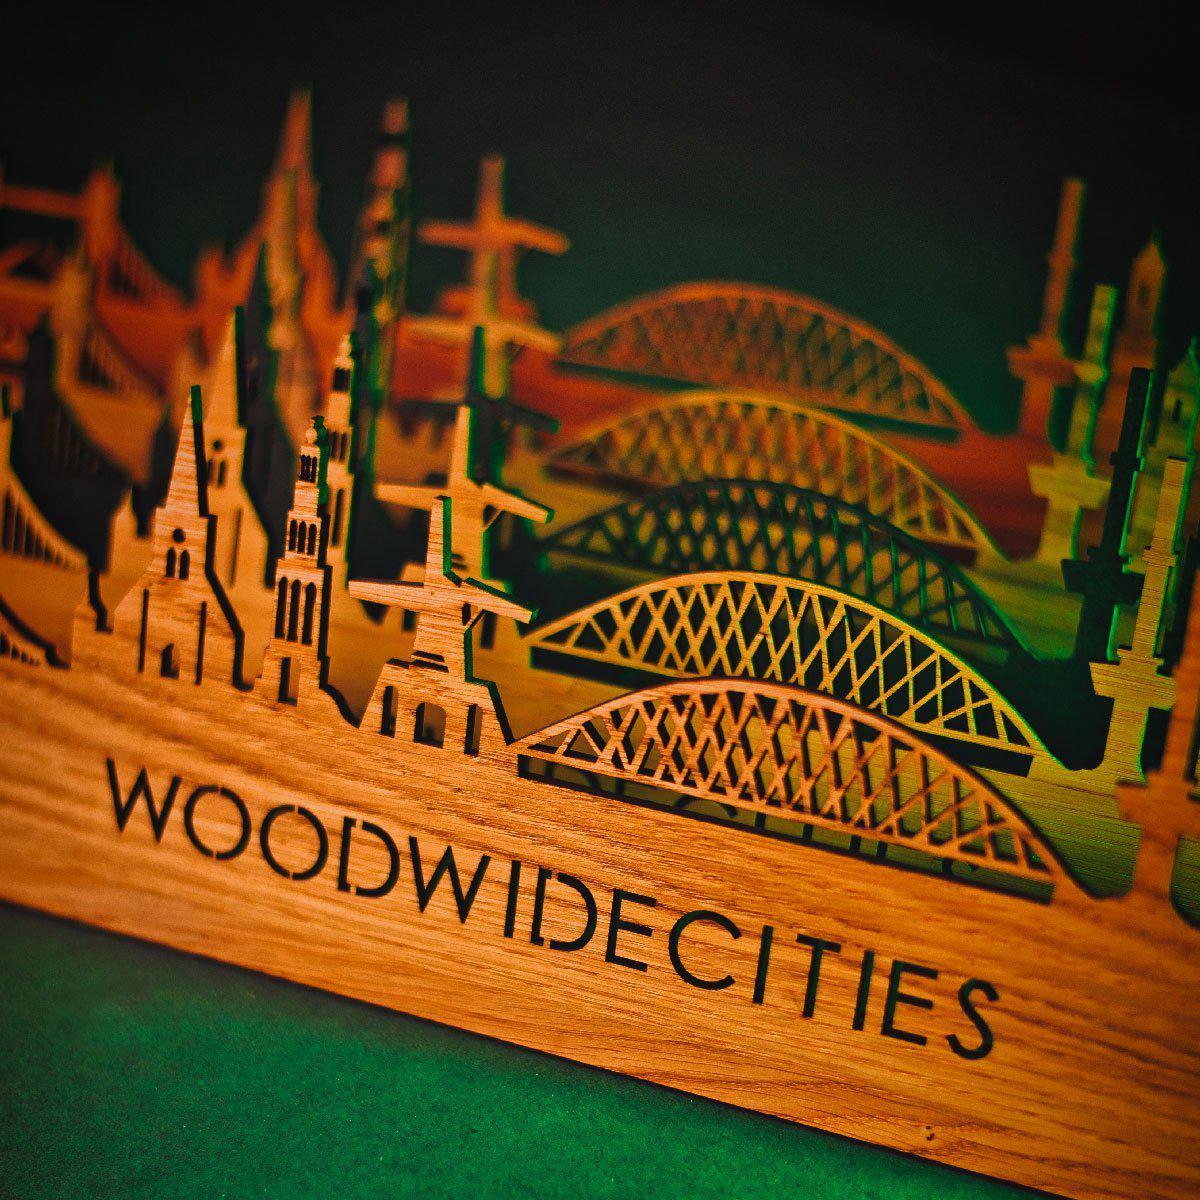 Skyline Klok Meerssen Bamboe houten cadeau wanddecoratie relatiegeschenk van WoodWideCities